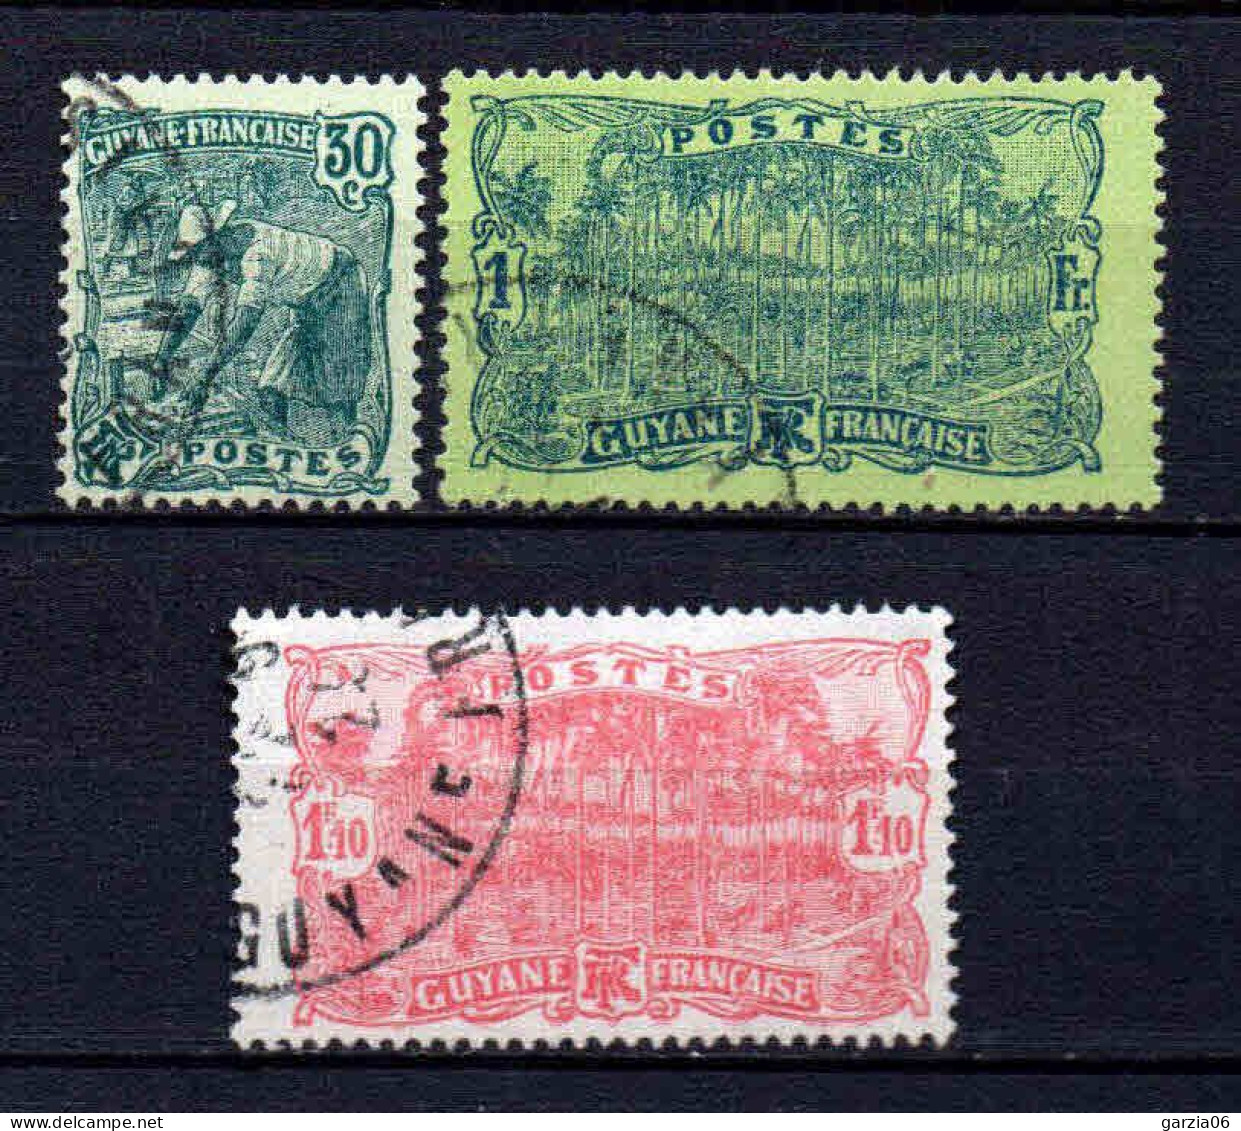 Guyane - 1928 - Tb Antérieur Nouvelles Valeurs   -  N° 106 à 108  - Oblit - Used - Gebraucht